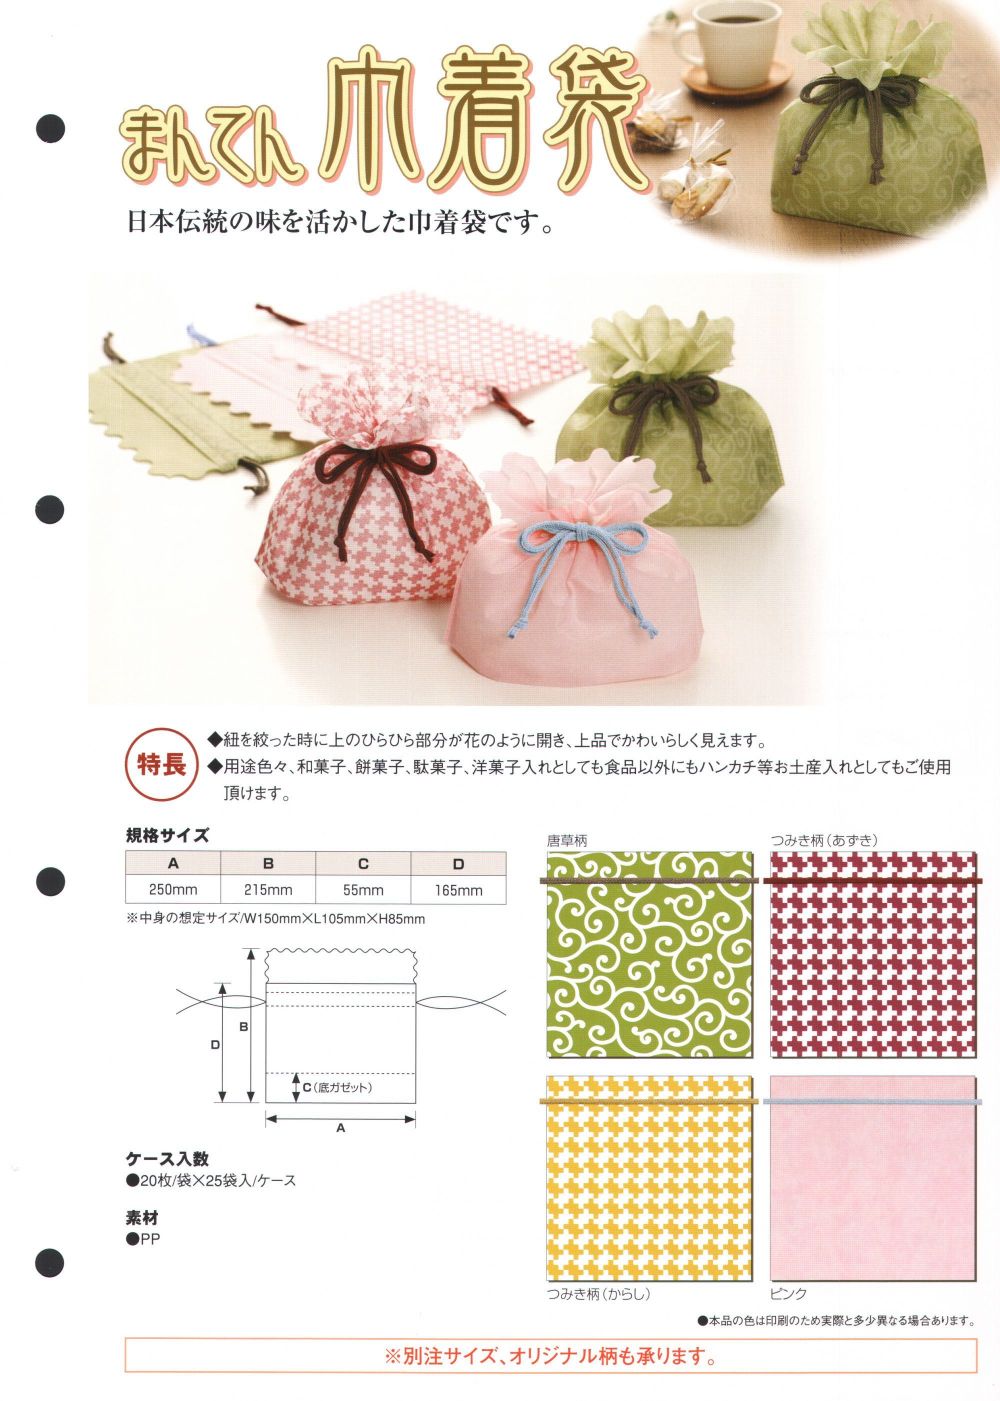 ユニフォーム1 東京メディカルの巾着袋・信玄袋・ポシェット KINCHAKU-P